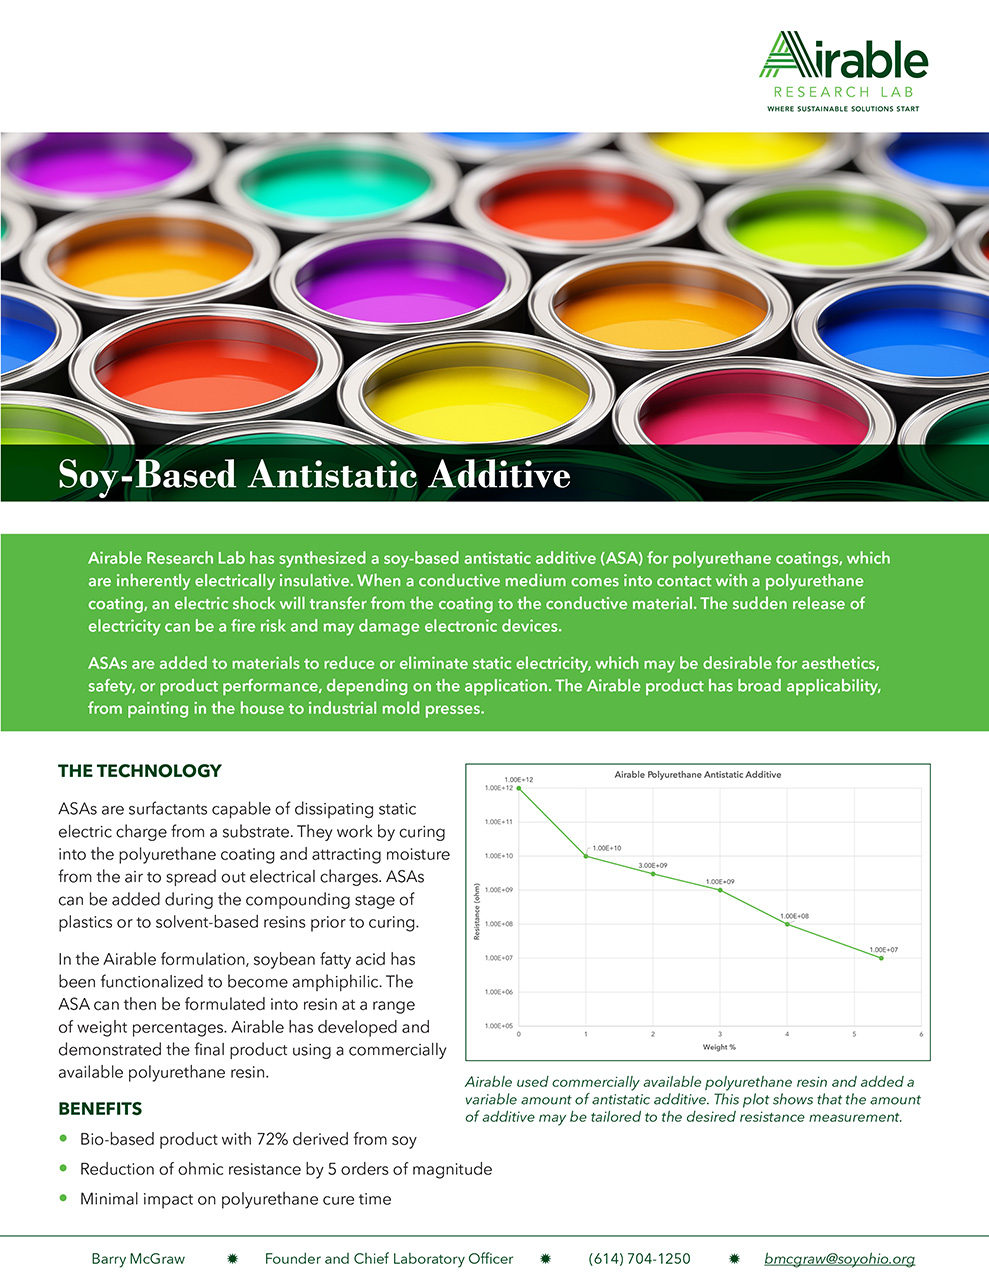 Soy-Based Antistatic Additive (ASA) for Polyurethane Coatings